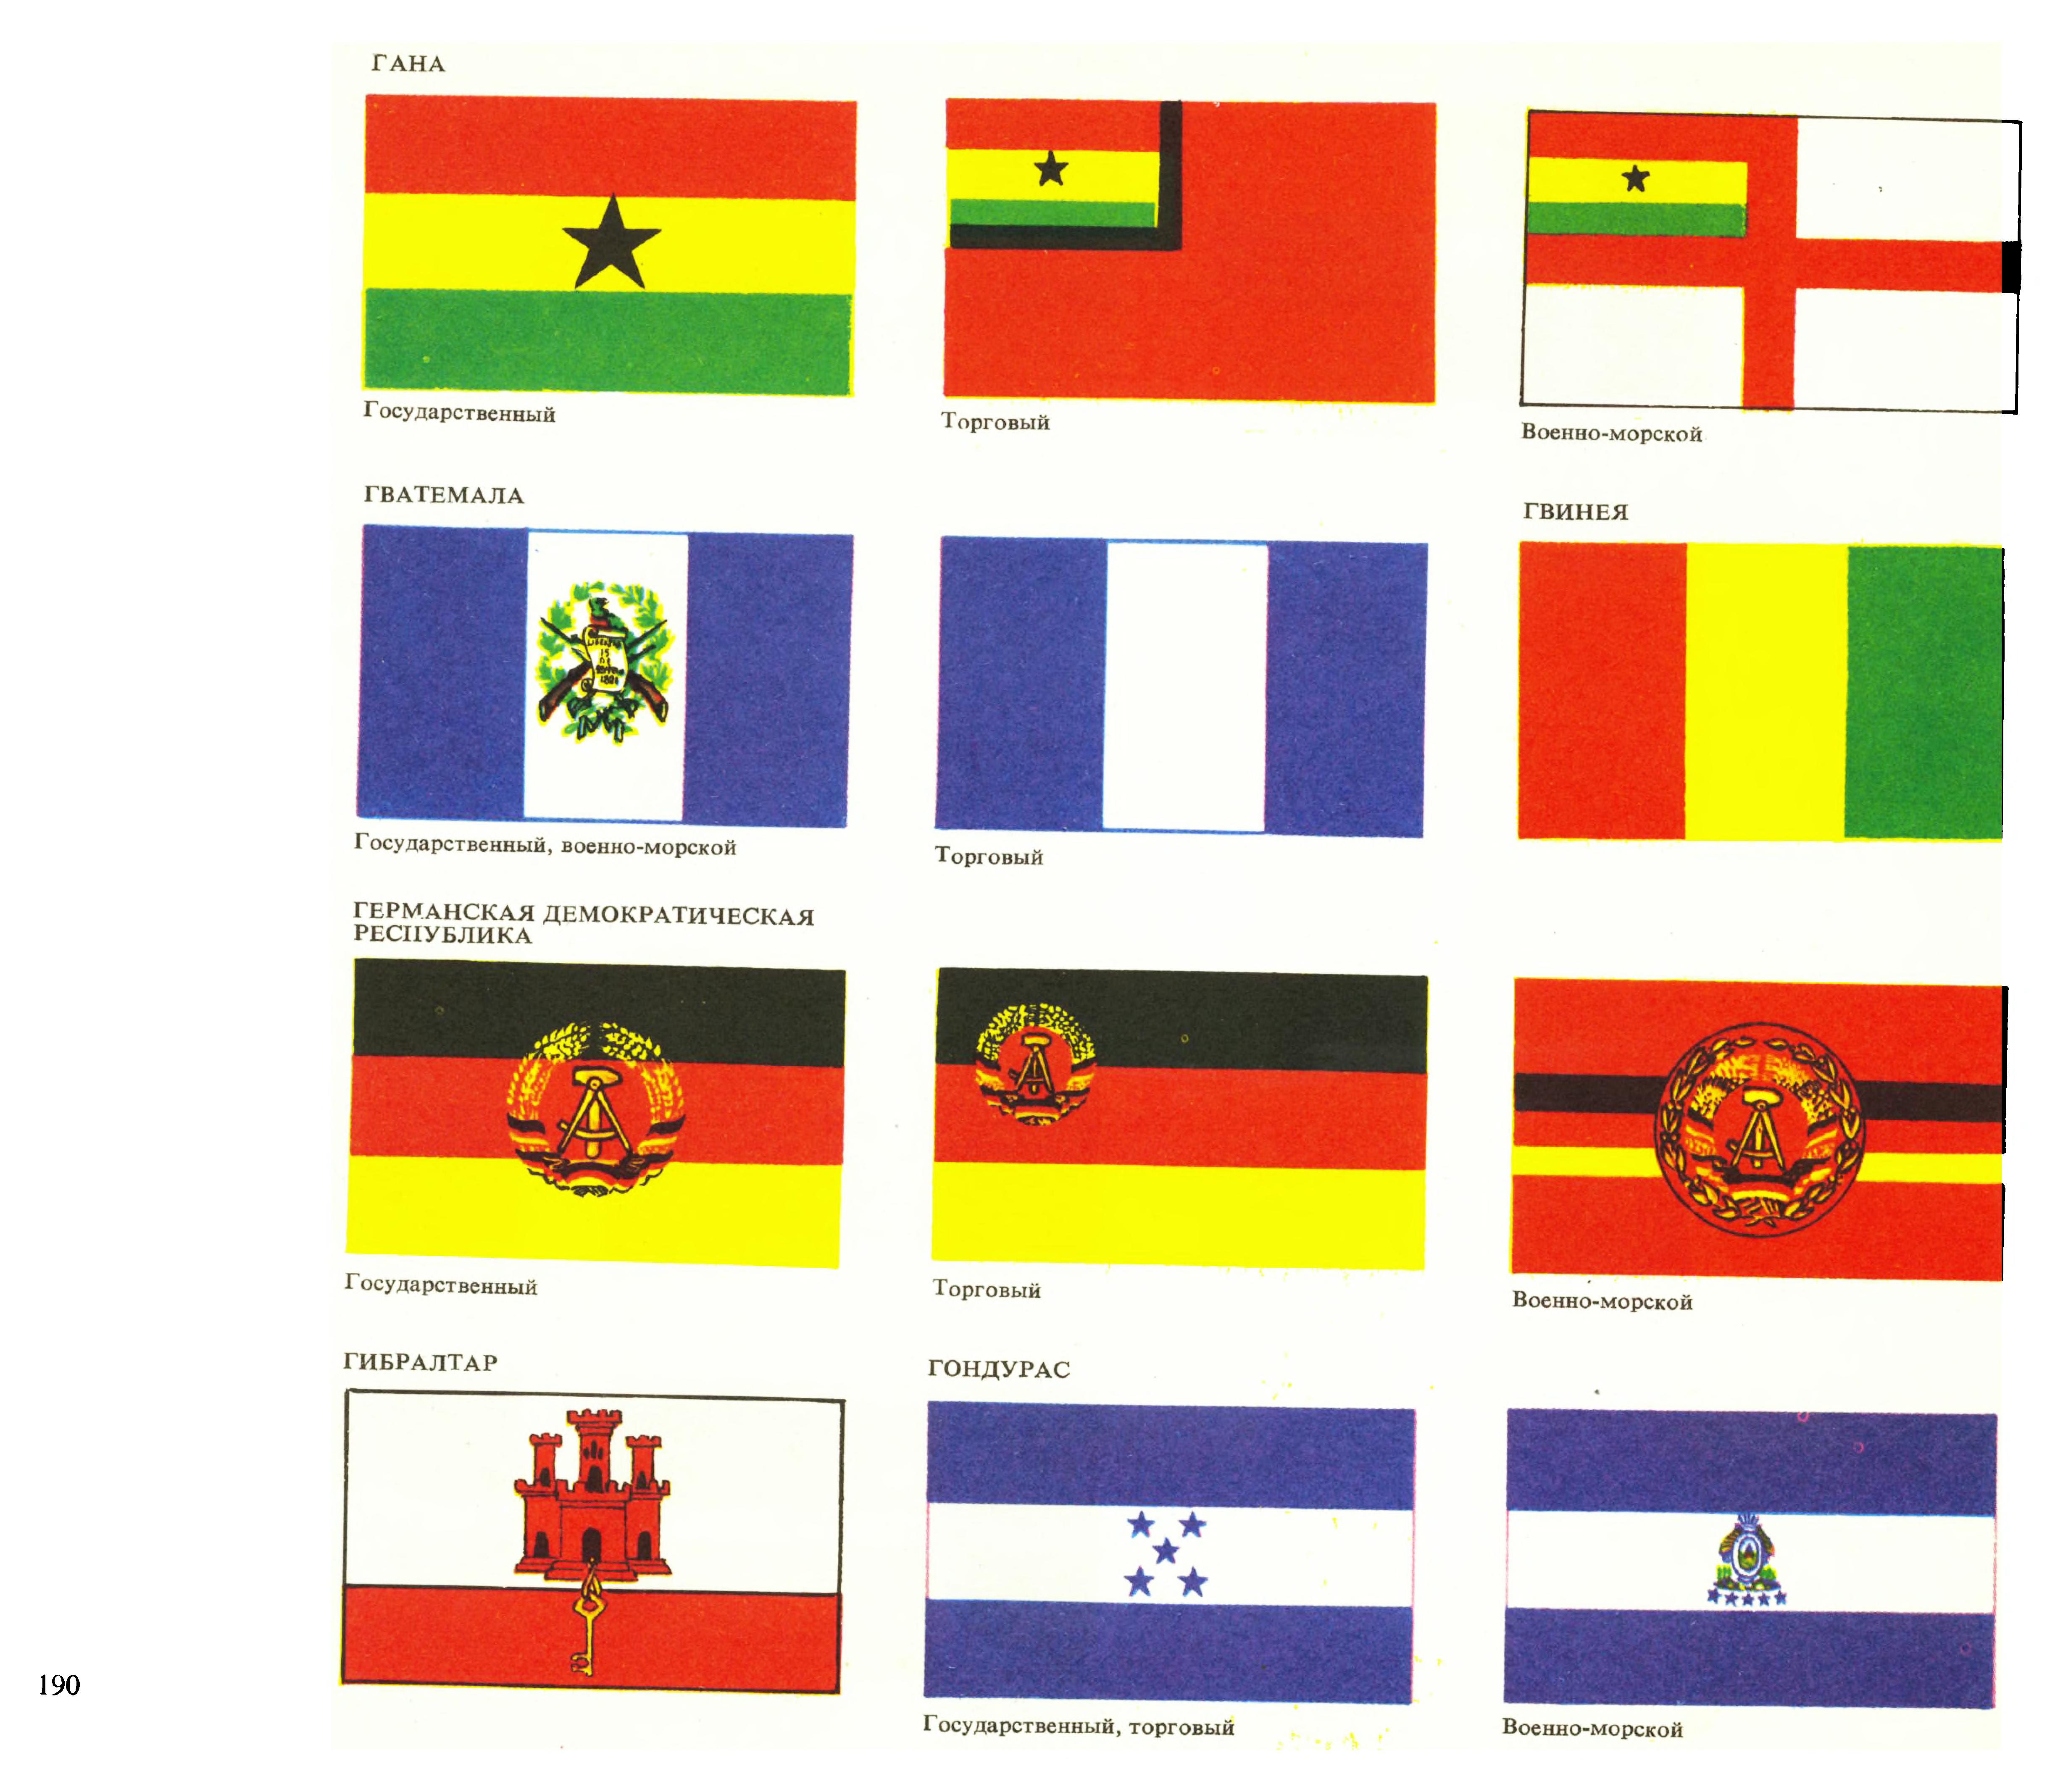 Каких стран похожие флаги